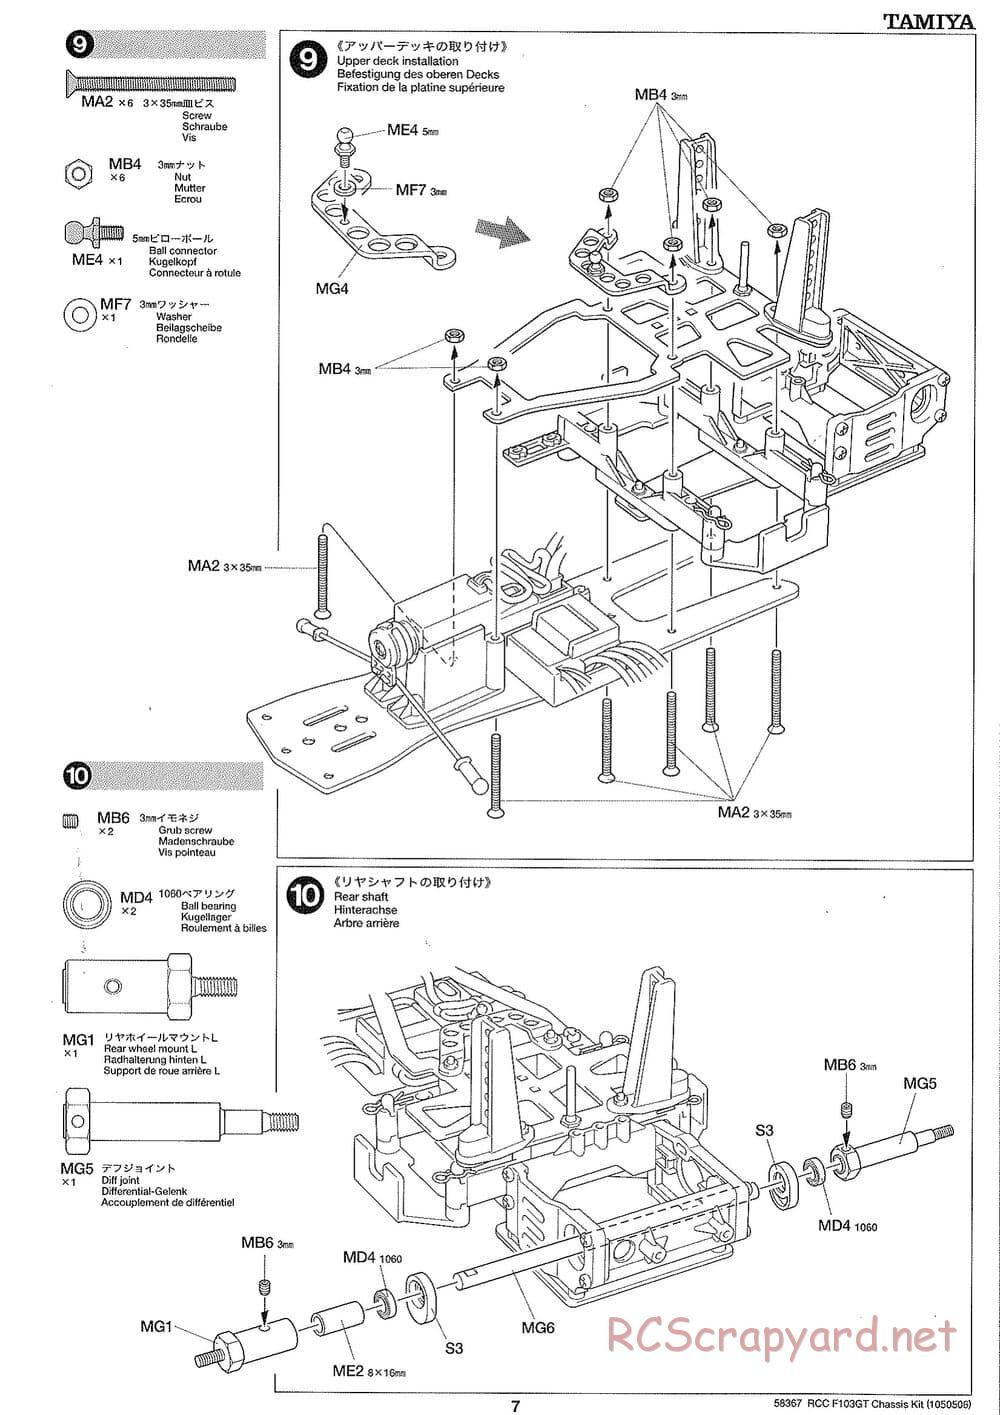 Tamiya - F103GT Chassis Kit - Manual - Page 7